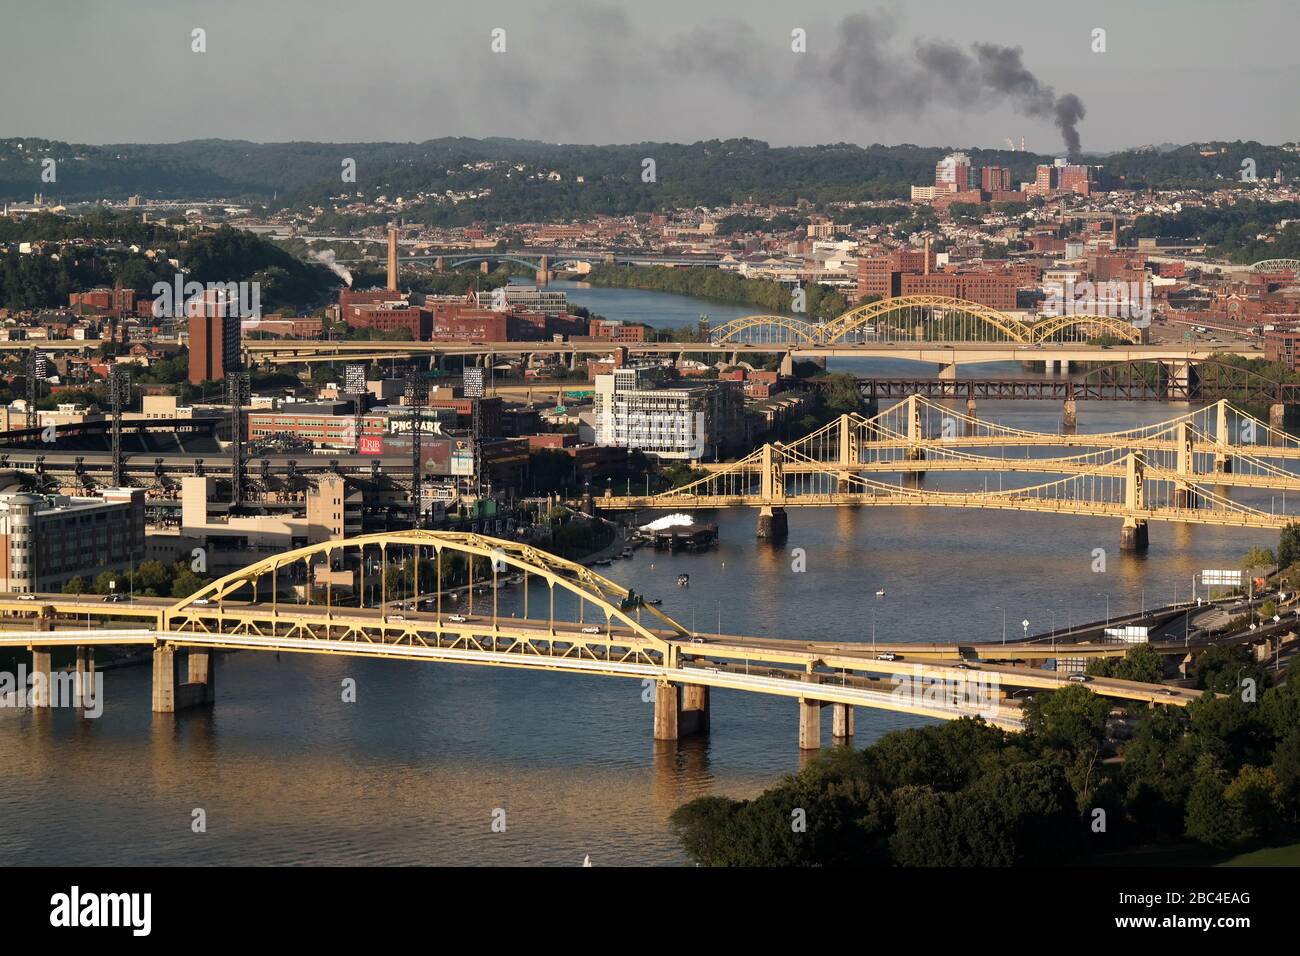 Des ponts traversent la rivière Allegheny dans le centre de Pittsburgh, Pennsylvanie, États-Unis. Le pont du fort Duquesne est en premier plan. Banque D'Images